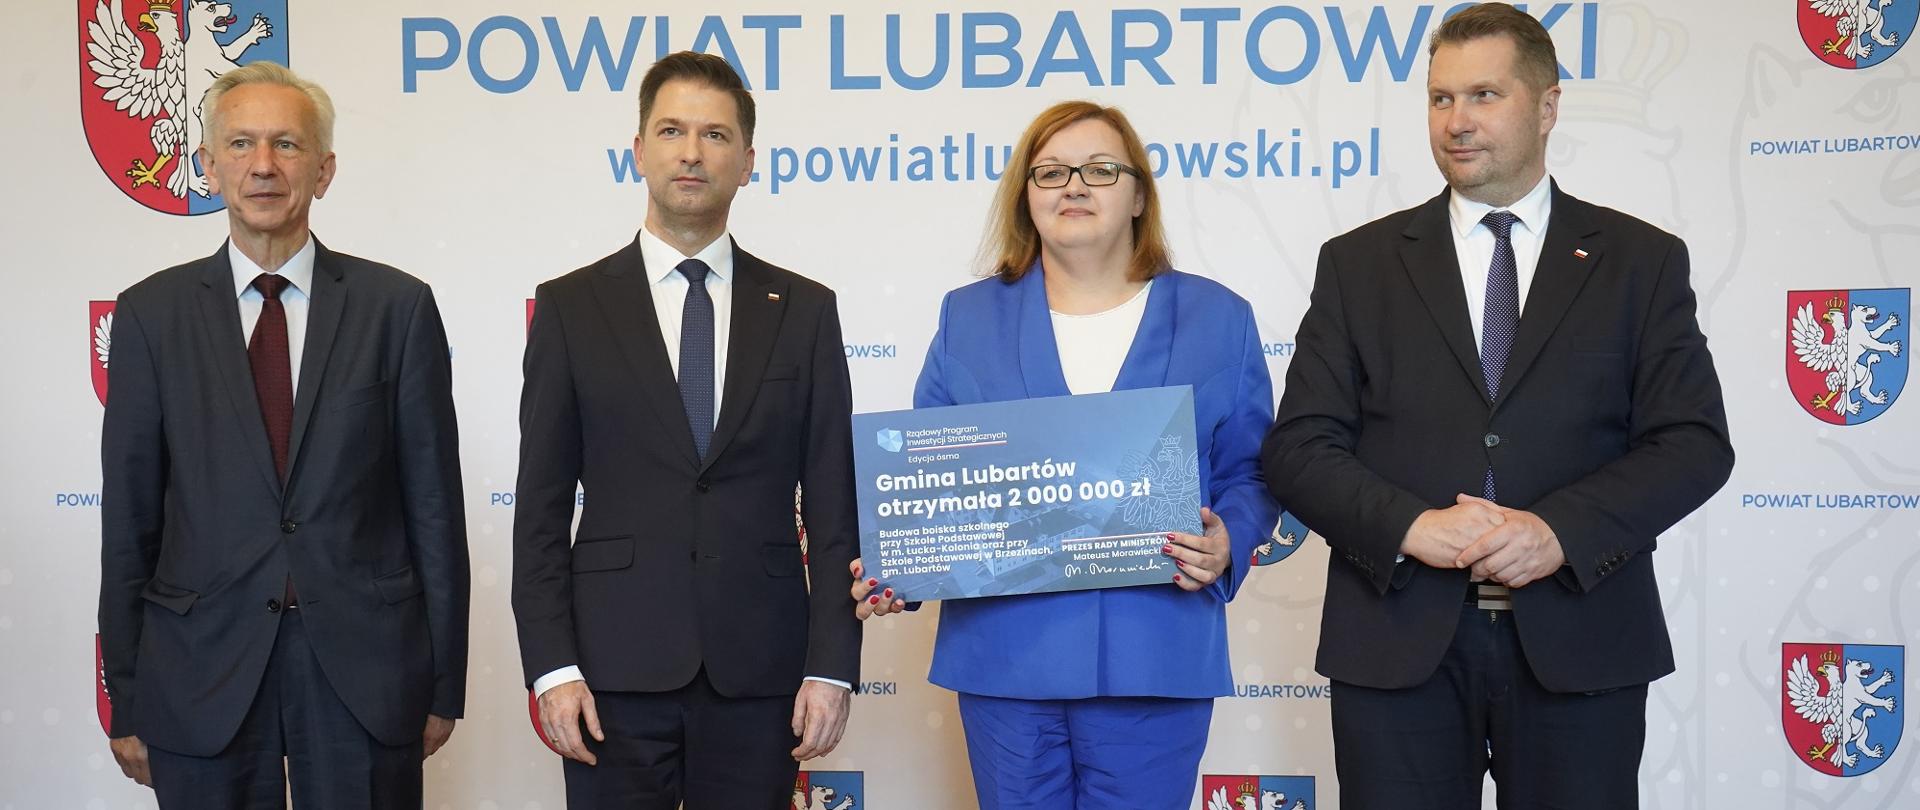 Pod ścianką z napisem Powiat Lubartowski stoi minister Czarnek, dwóch mężczyzn w garniturach i kobieta w niebieskim ubraniu która trzyma tabliczkę z napisem Gmina Lubartów.